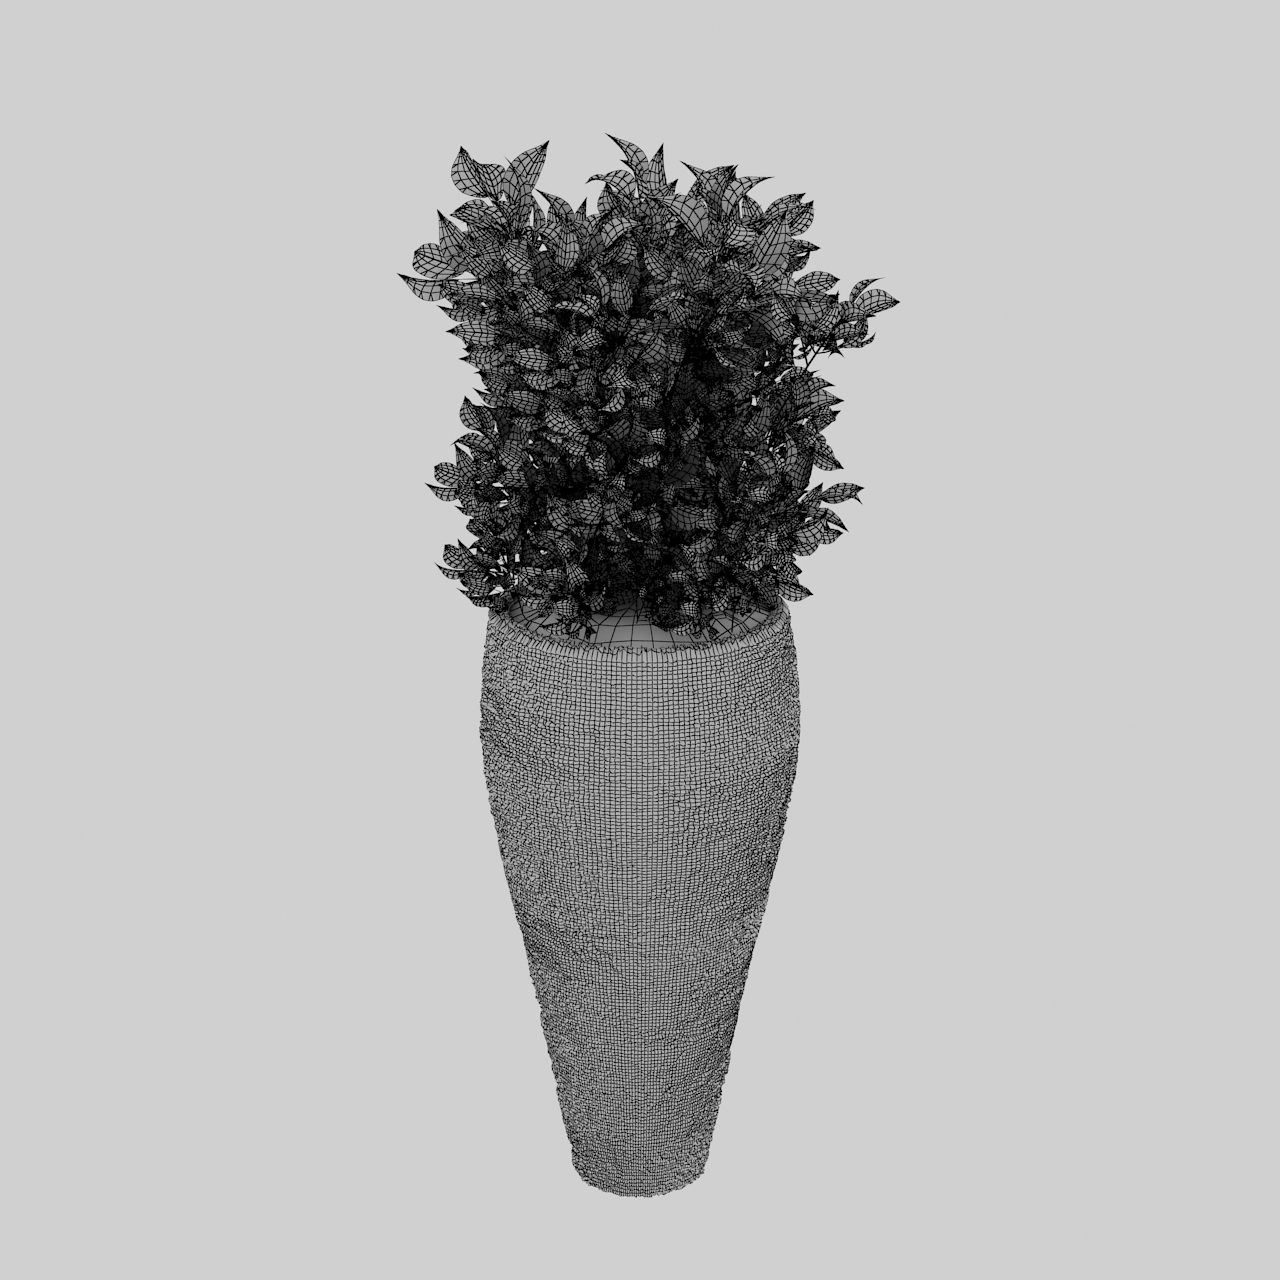 盆栽绿化植物3d模型